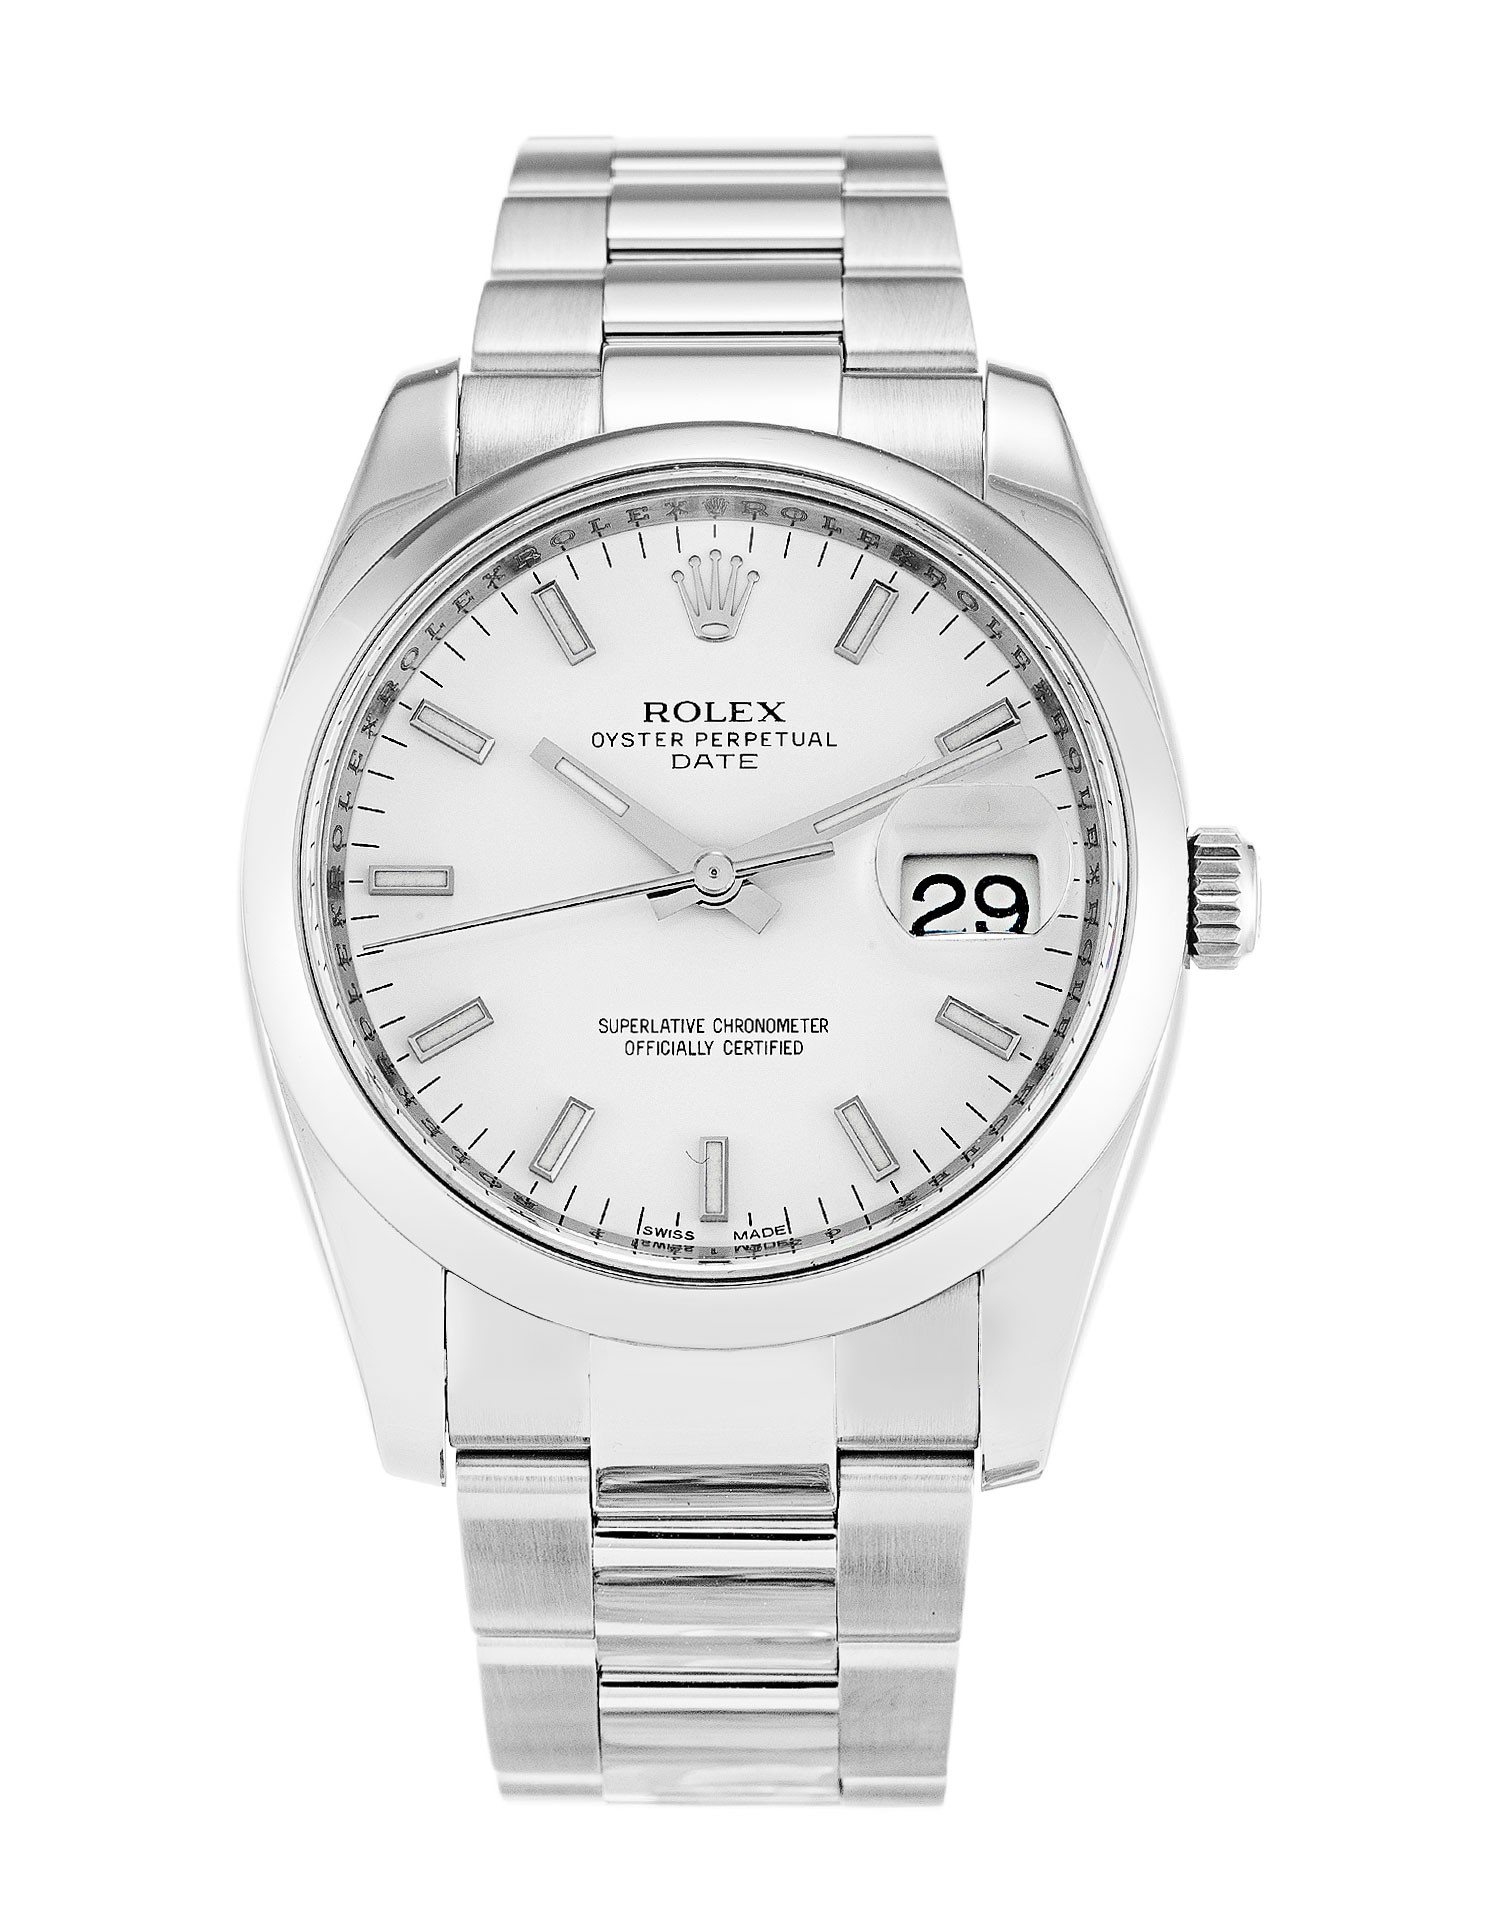 Replica Rolex Oyster Perpetual Date 115200